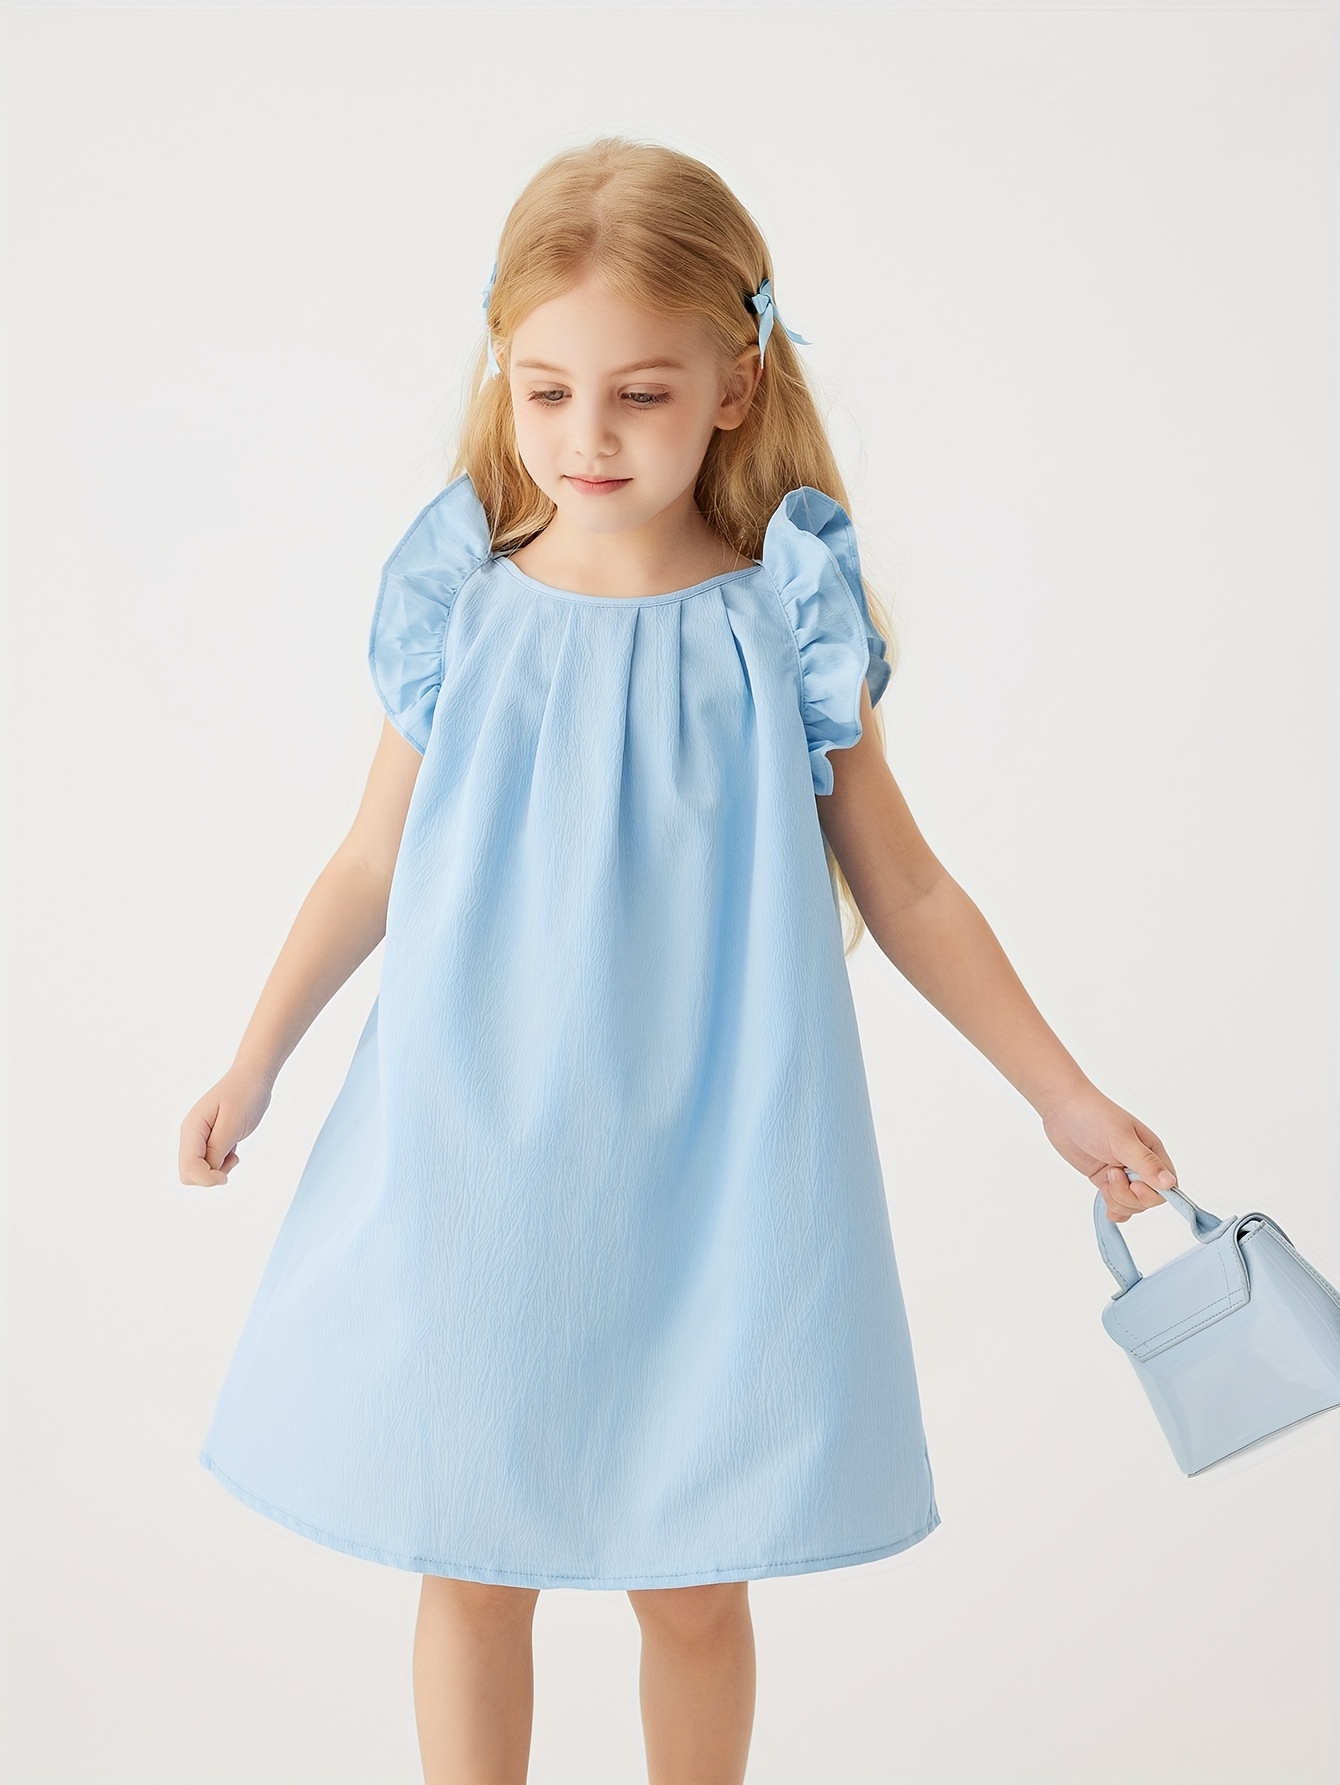 Robe fille 8 ans - Vente en ligne de Robes pour enfants filles